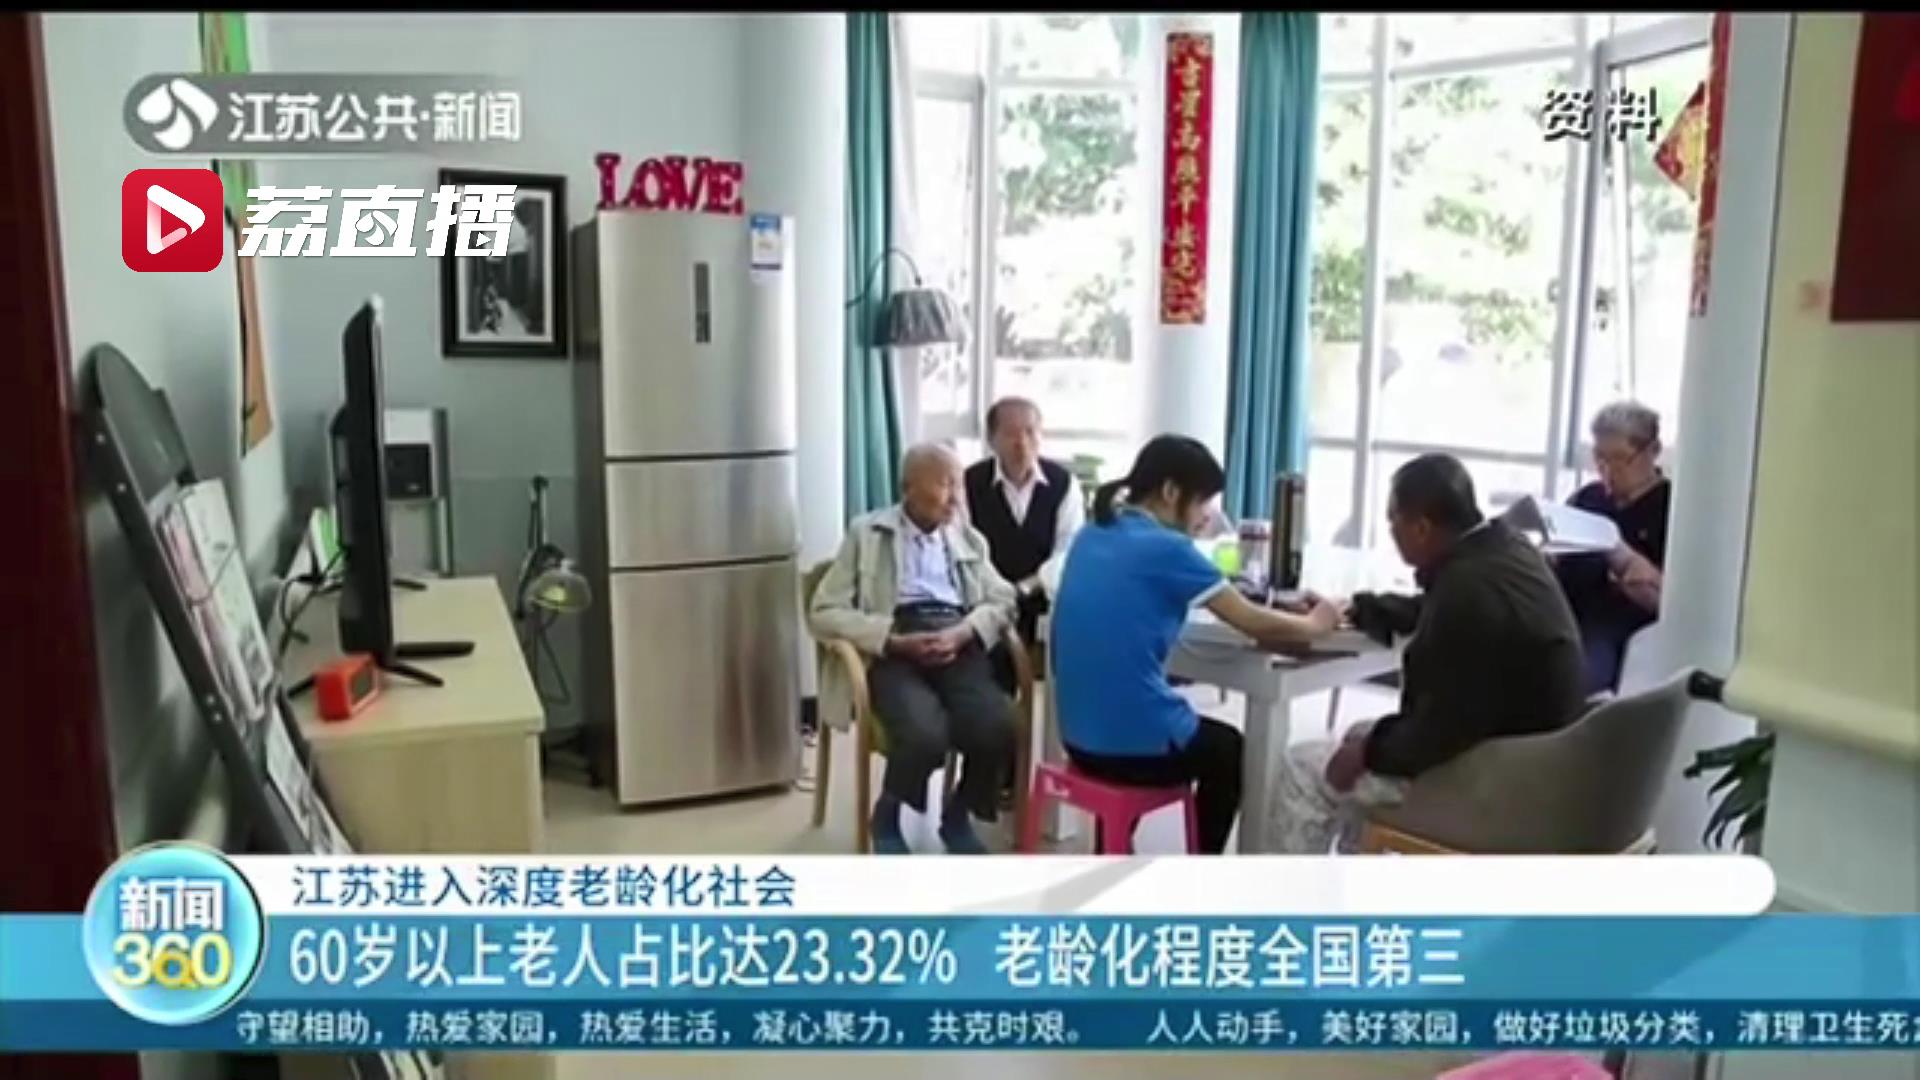 江苏进入深度老龄化社会！60岁以上老人占比达23.32% 老龄化程度全国第三